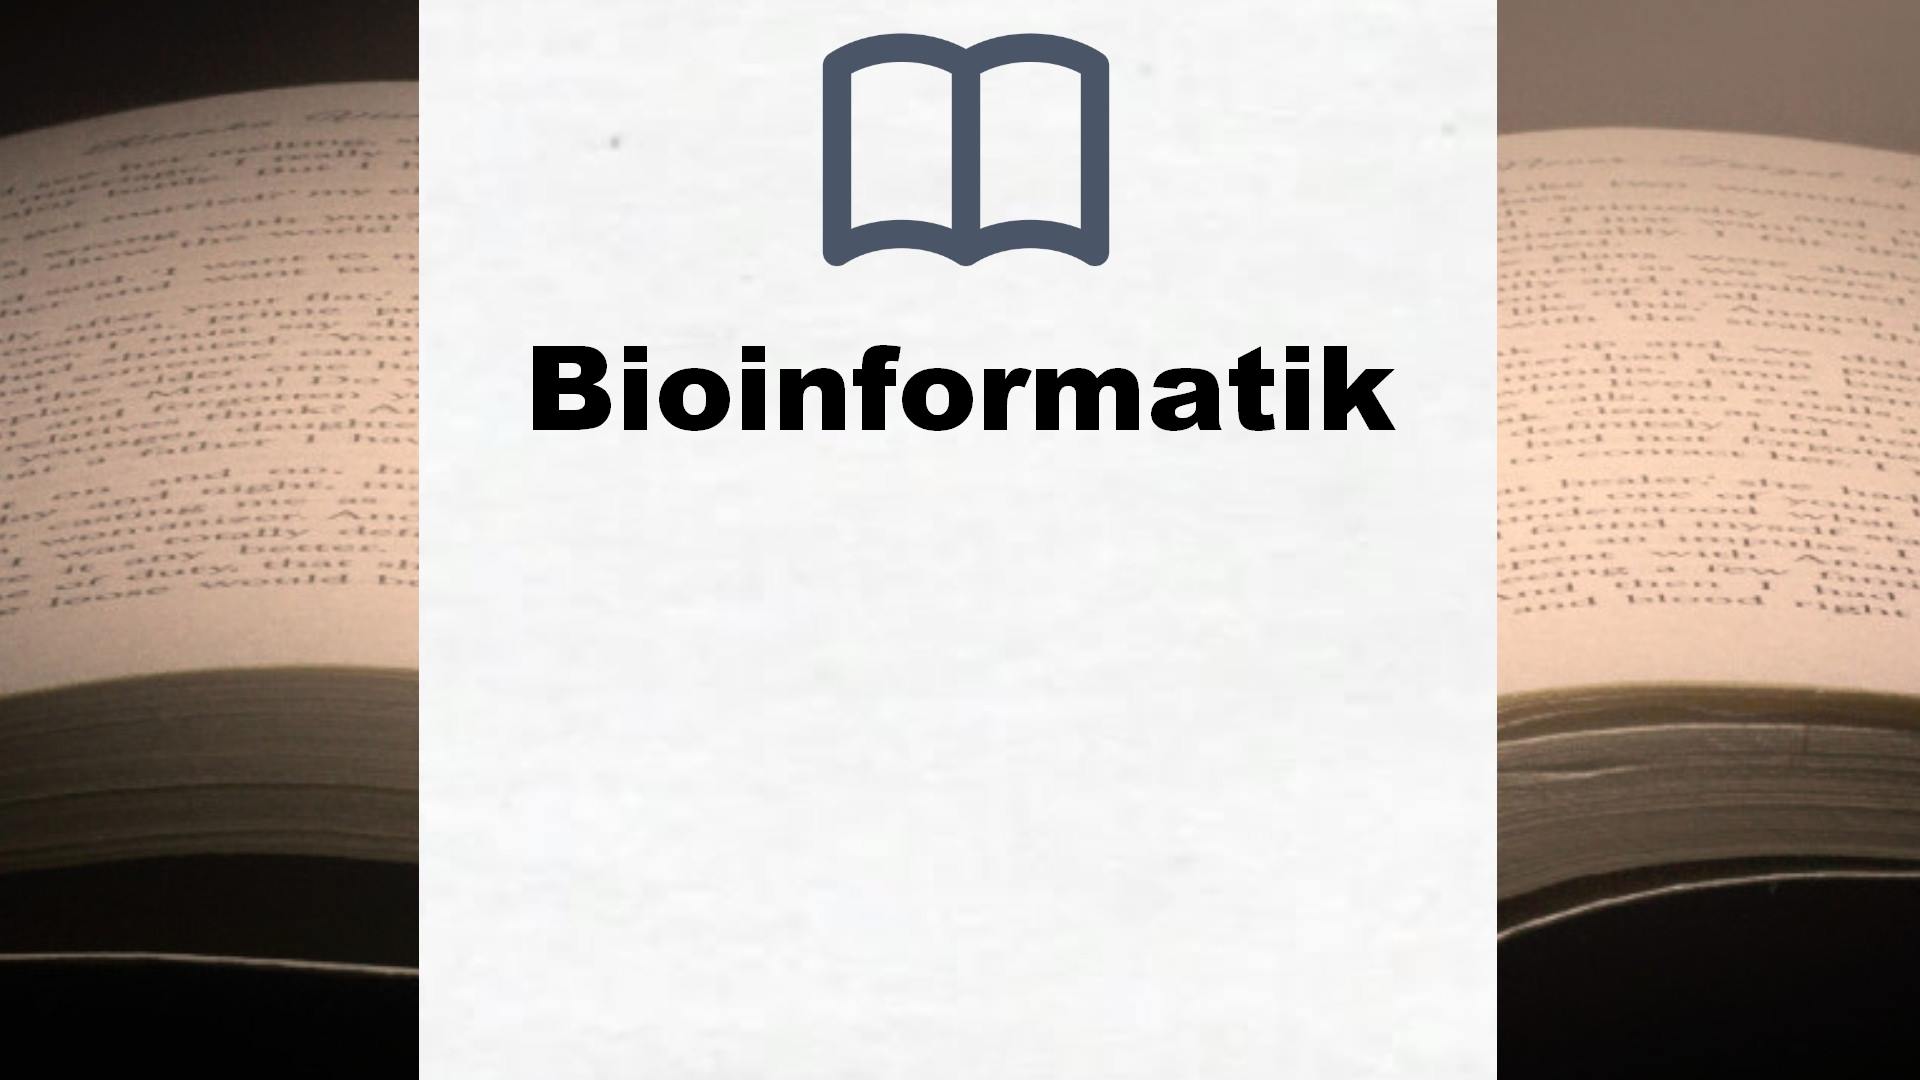 Bücher über Bioinformatik